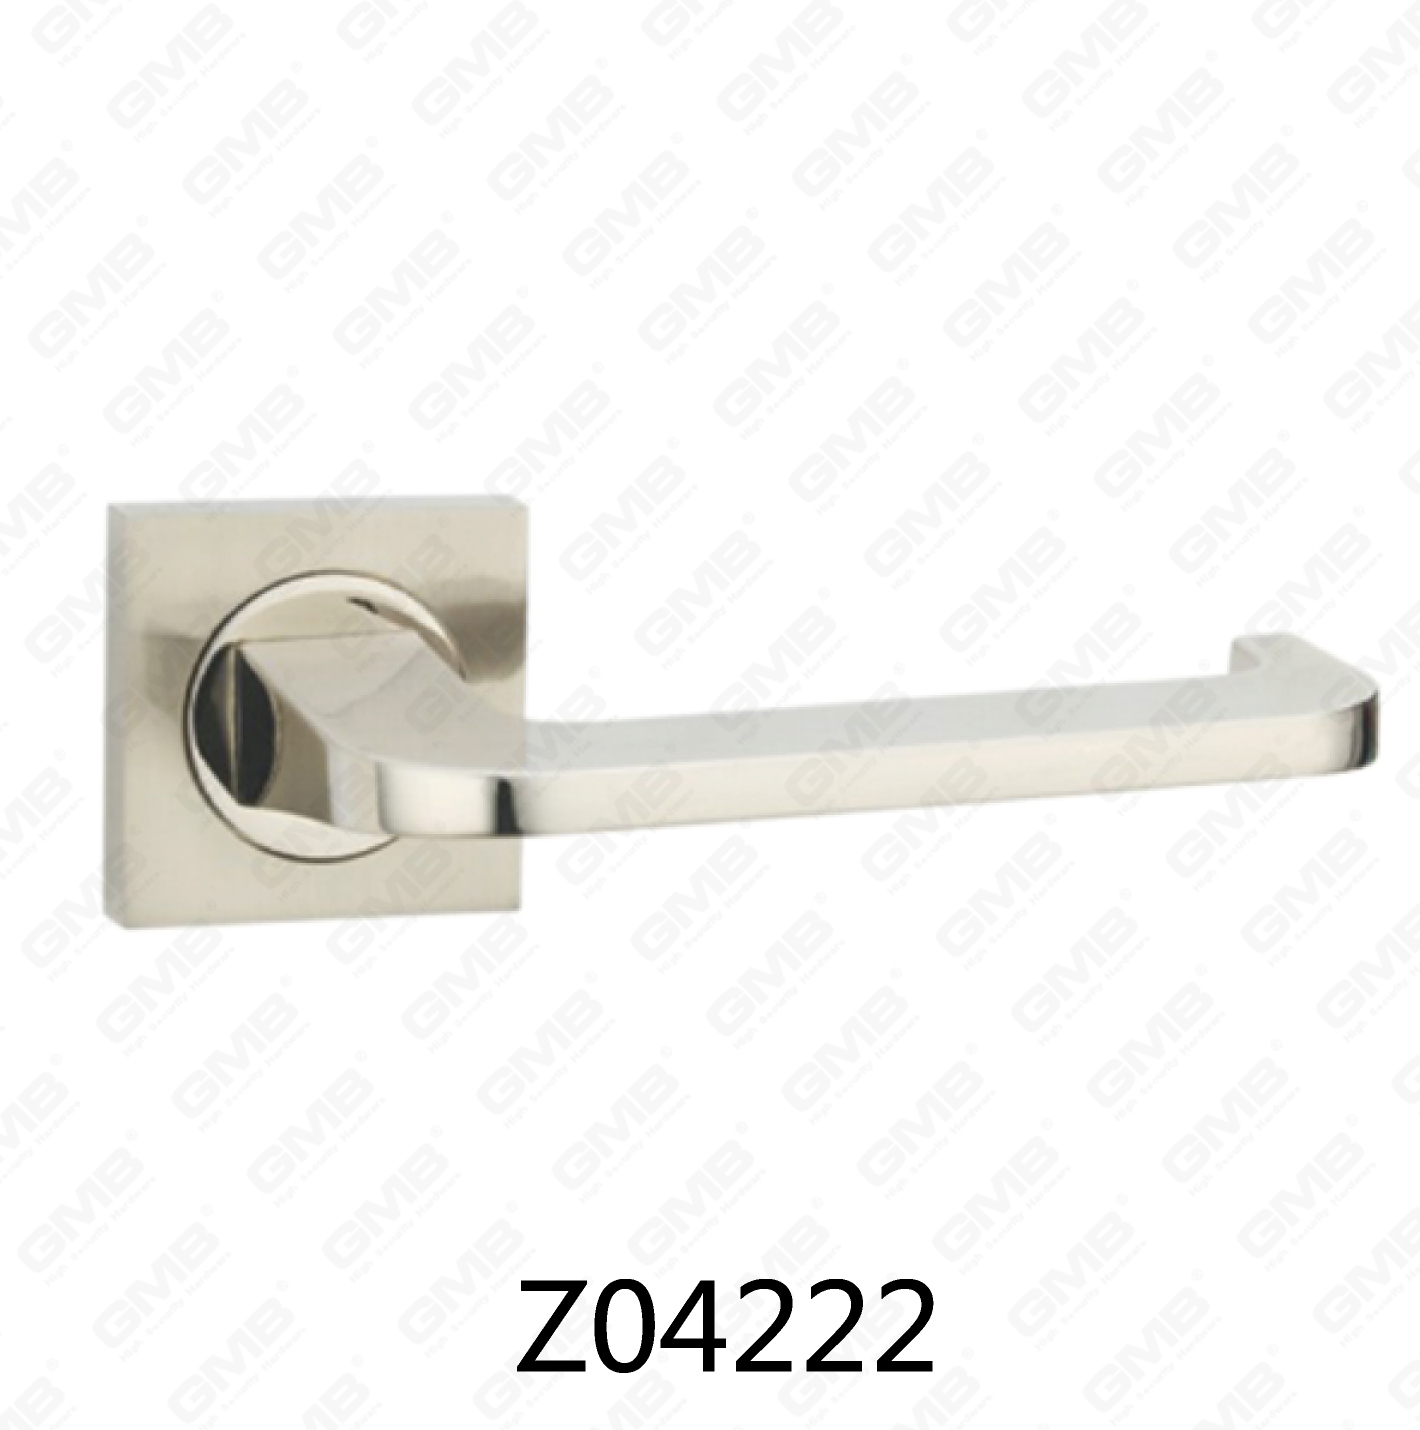 ידית דלת רוזטה מסגסוגת אבץ של Zamak עם רוזטה עגולה (Z04222)